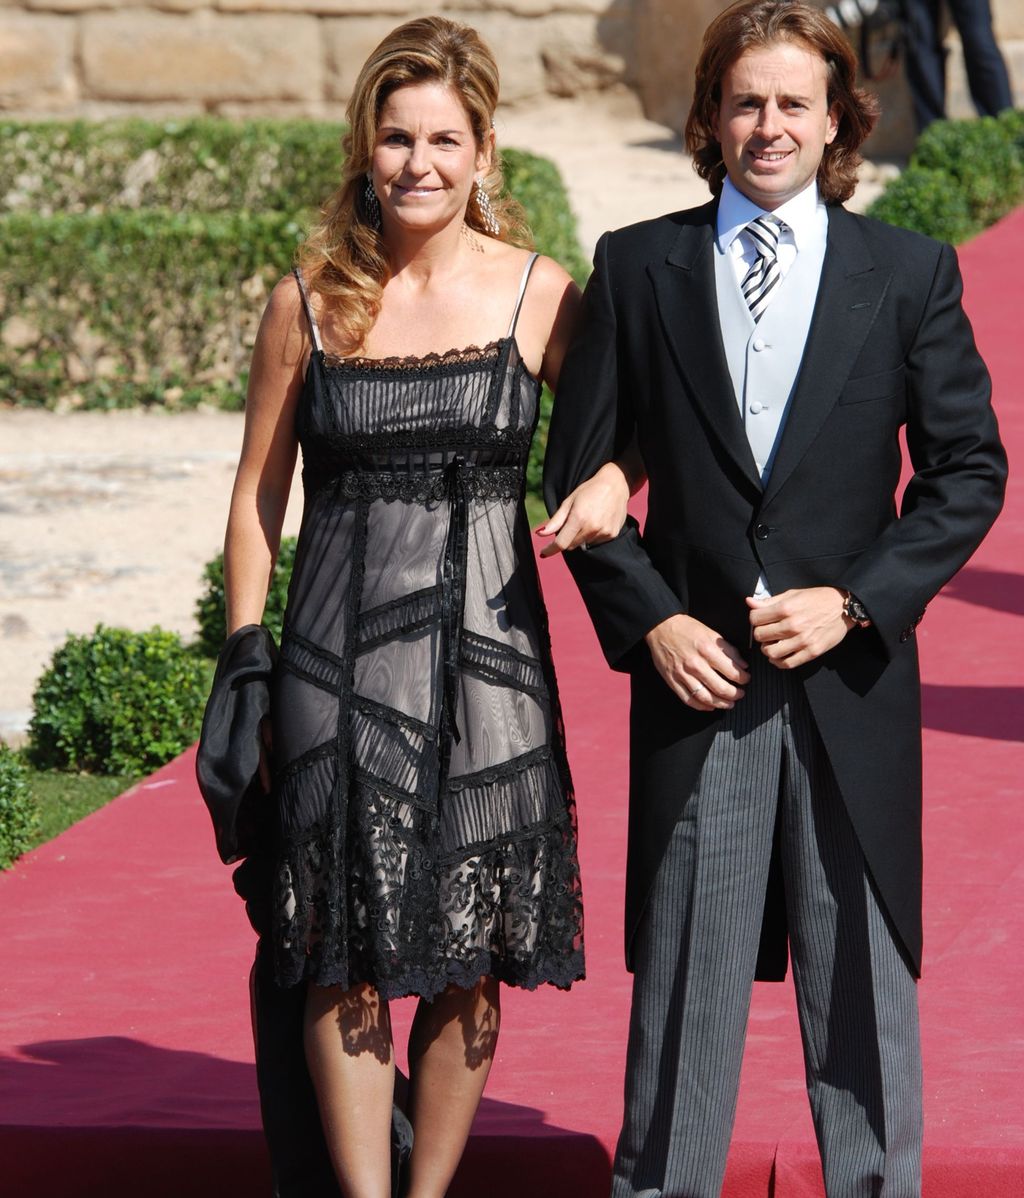 Arantxa Sánchez Vicario y Josep Santacana, en la boda de Rafa Medina y Laura Vecino (2010)